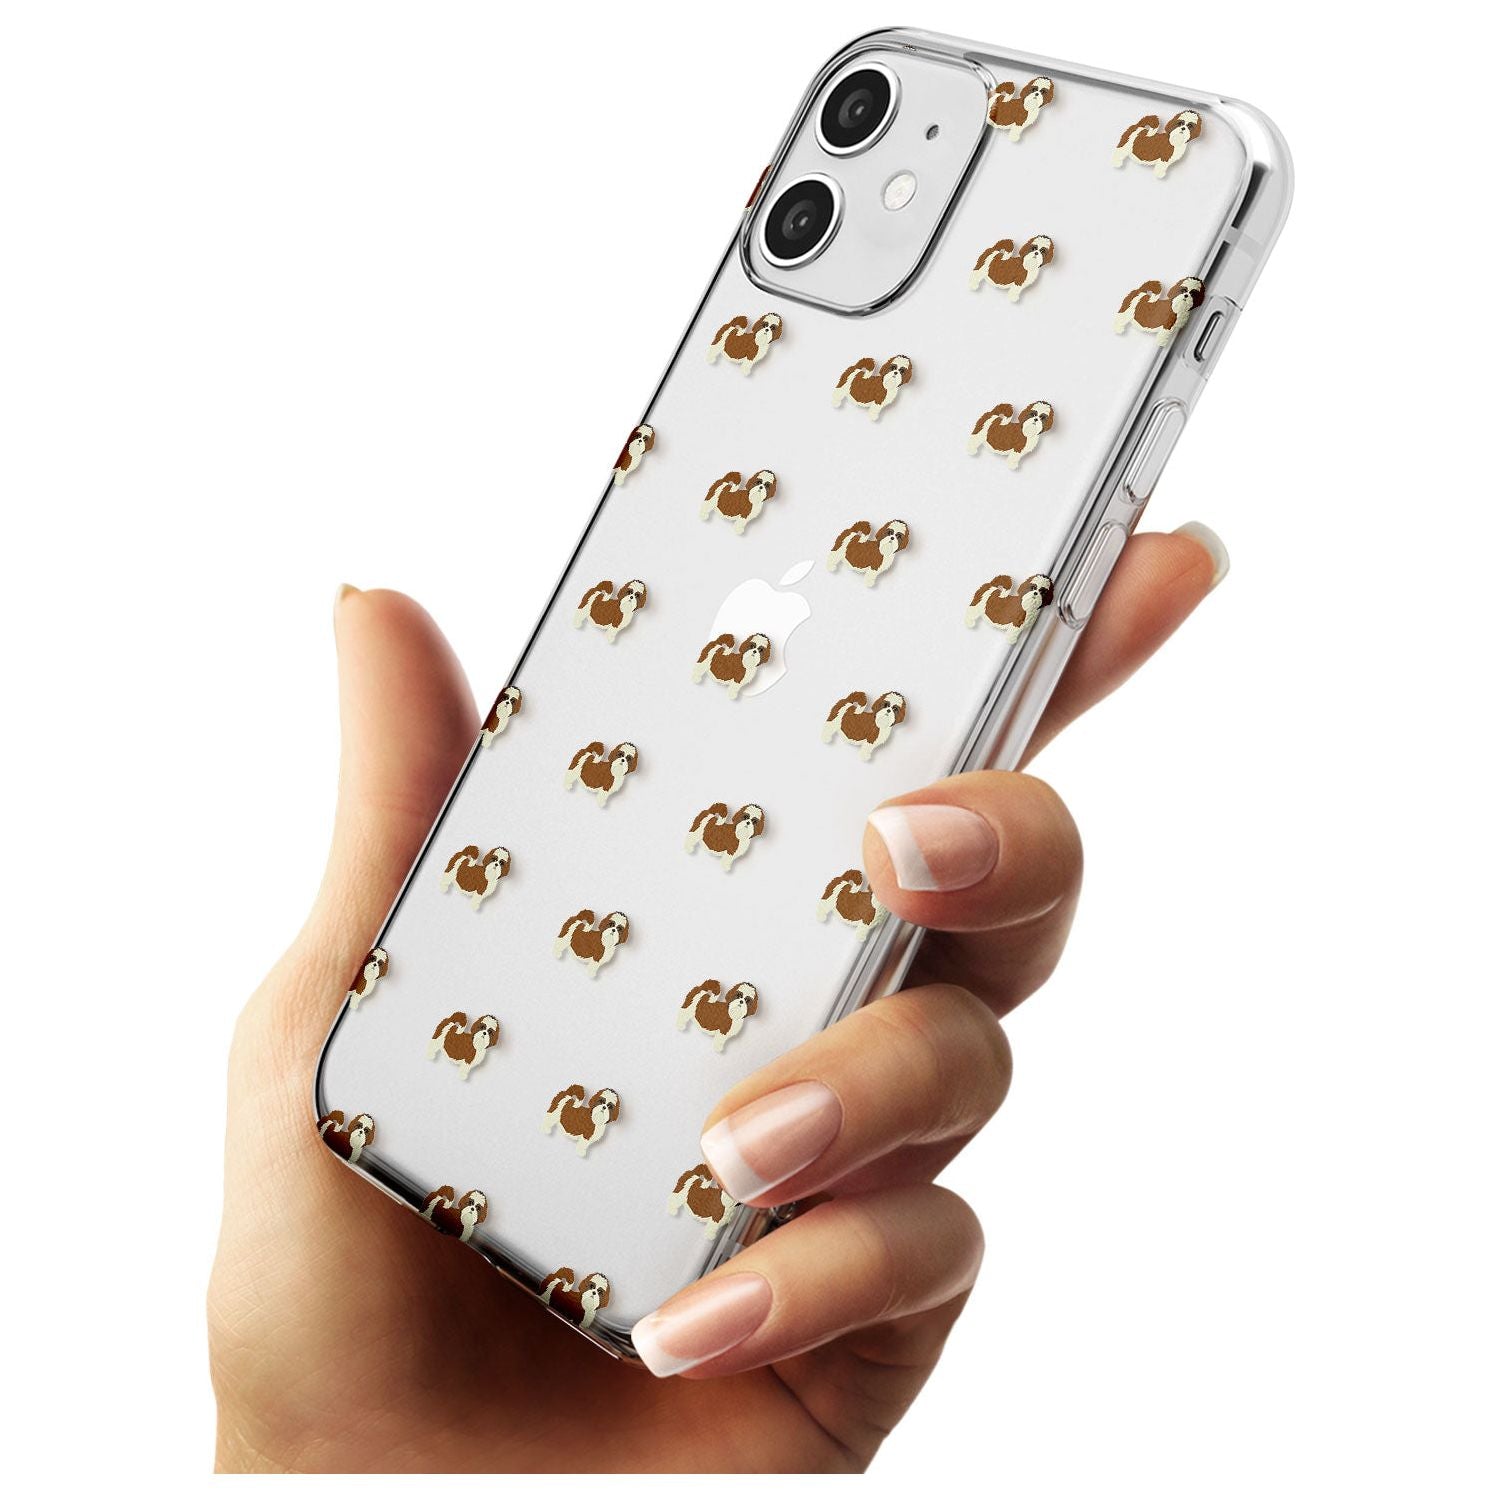 Shih Tzu Dog Pattern Clear Slim TPU Phone Case for iPhone 11